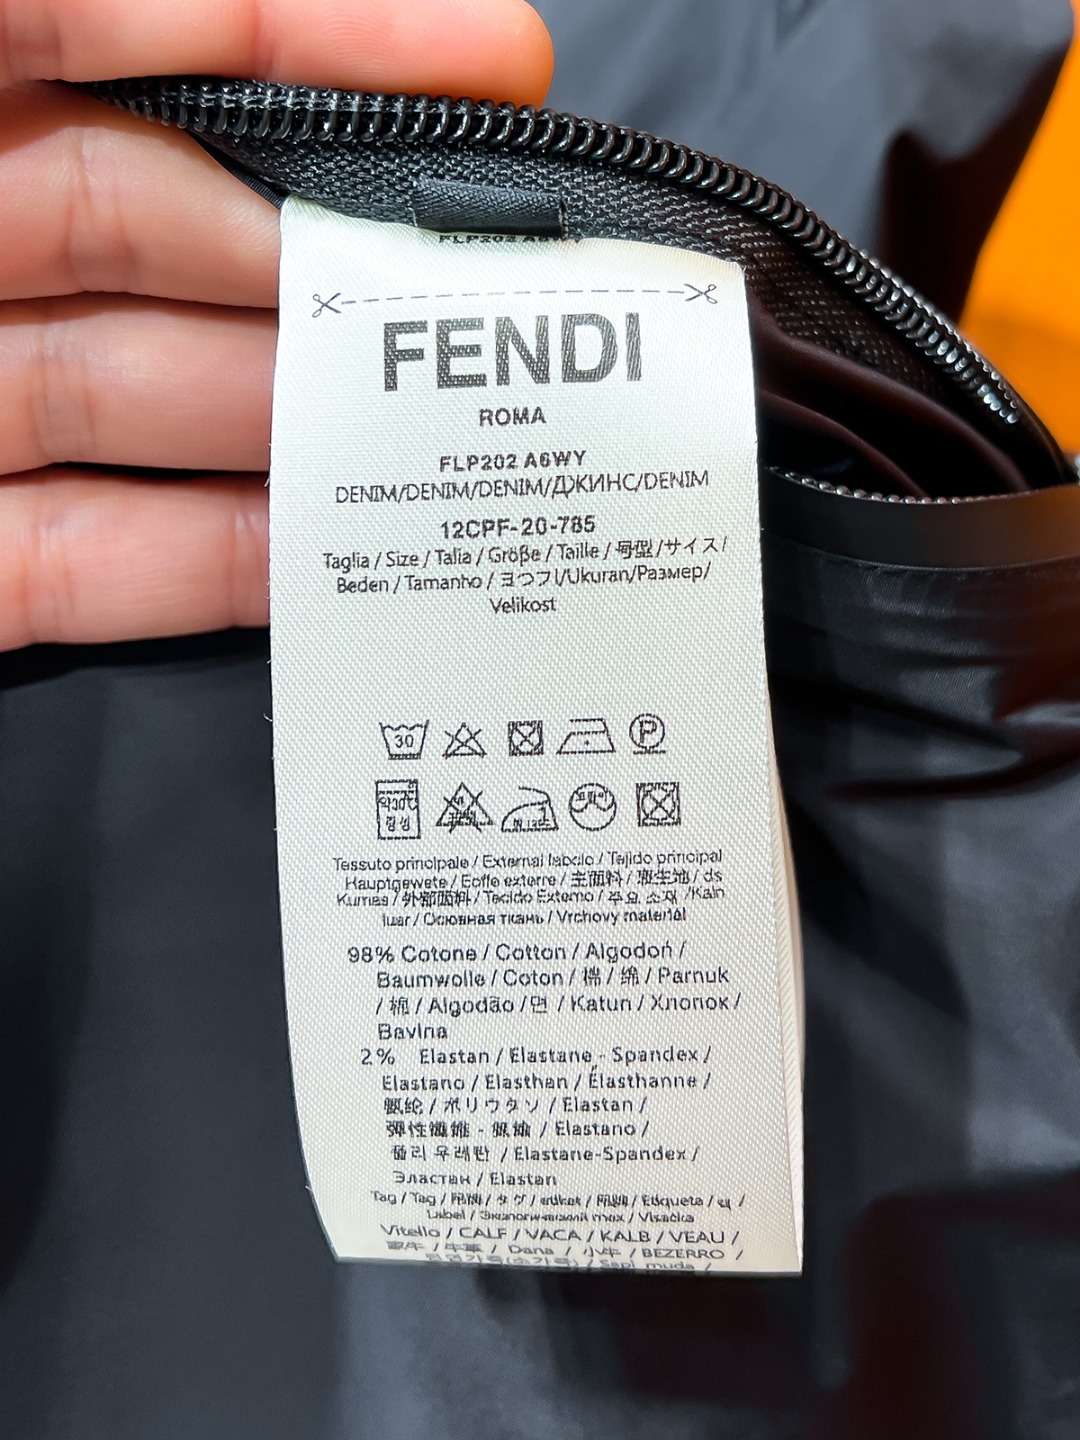 FENDI#24ss风衣系男装高端梭织外套高端精品系列男女同款贸易公司渠道订单官网专柜在售系列业内独家首